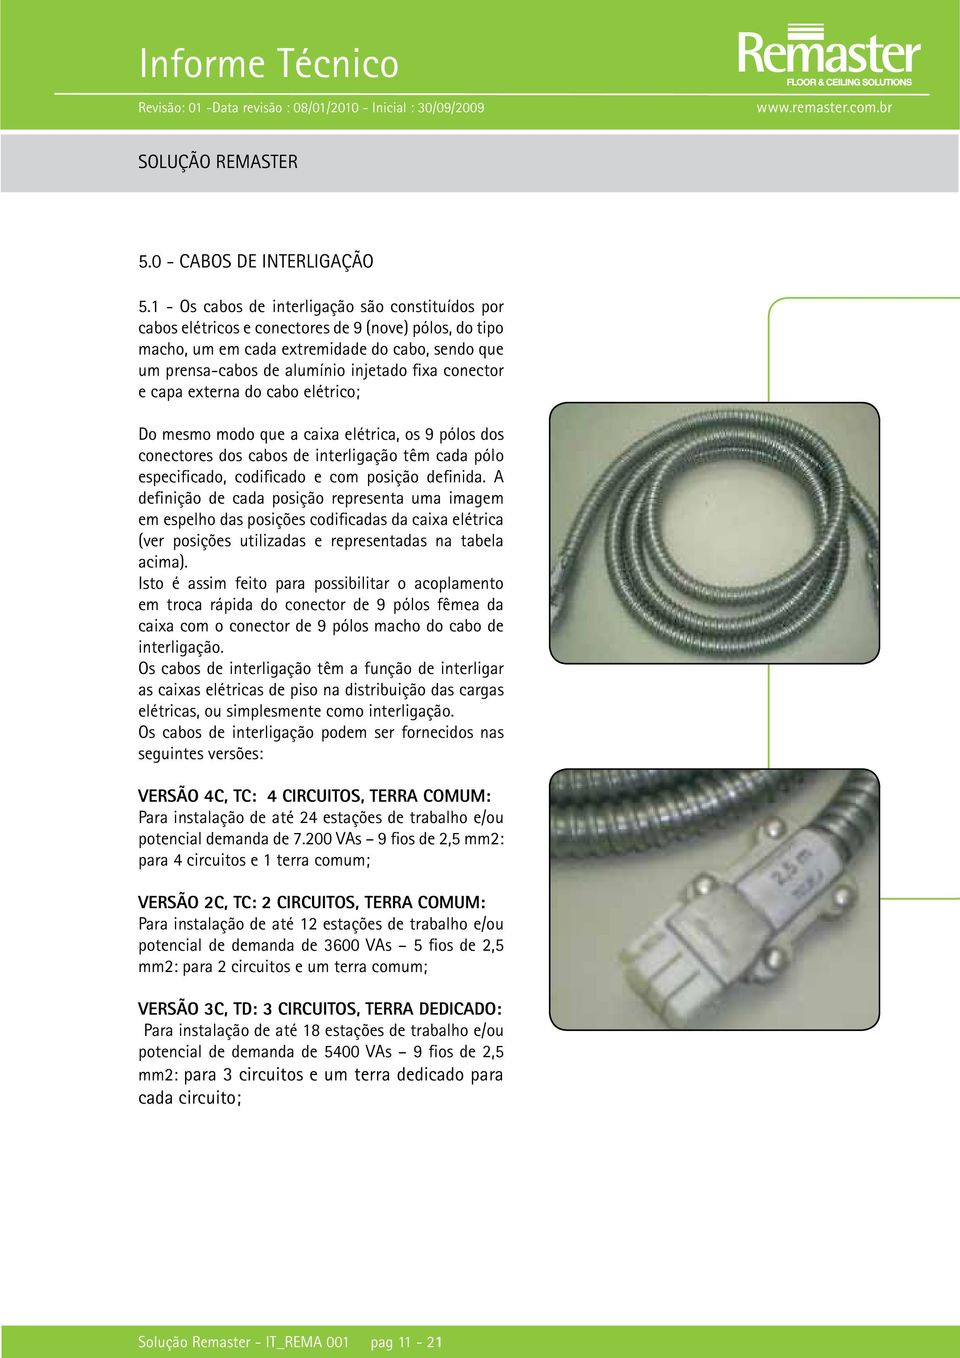 conector e capa externa do cabo elétrico; Do mesmo modo que a caixa elétrica, os 9 pólos dos conectores dos cabos de interligação têm cada pólo especificado, codificado e com posição definida.